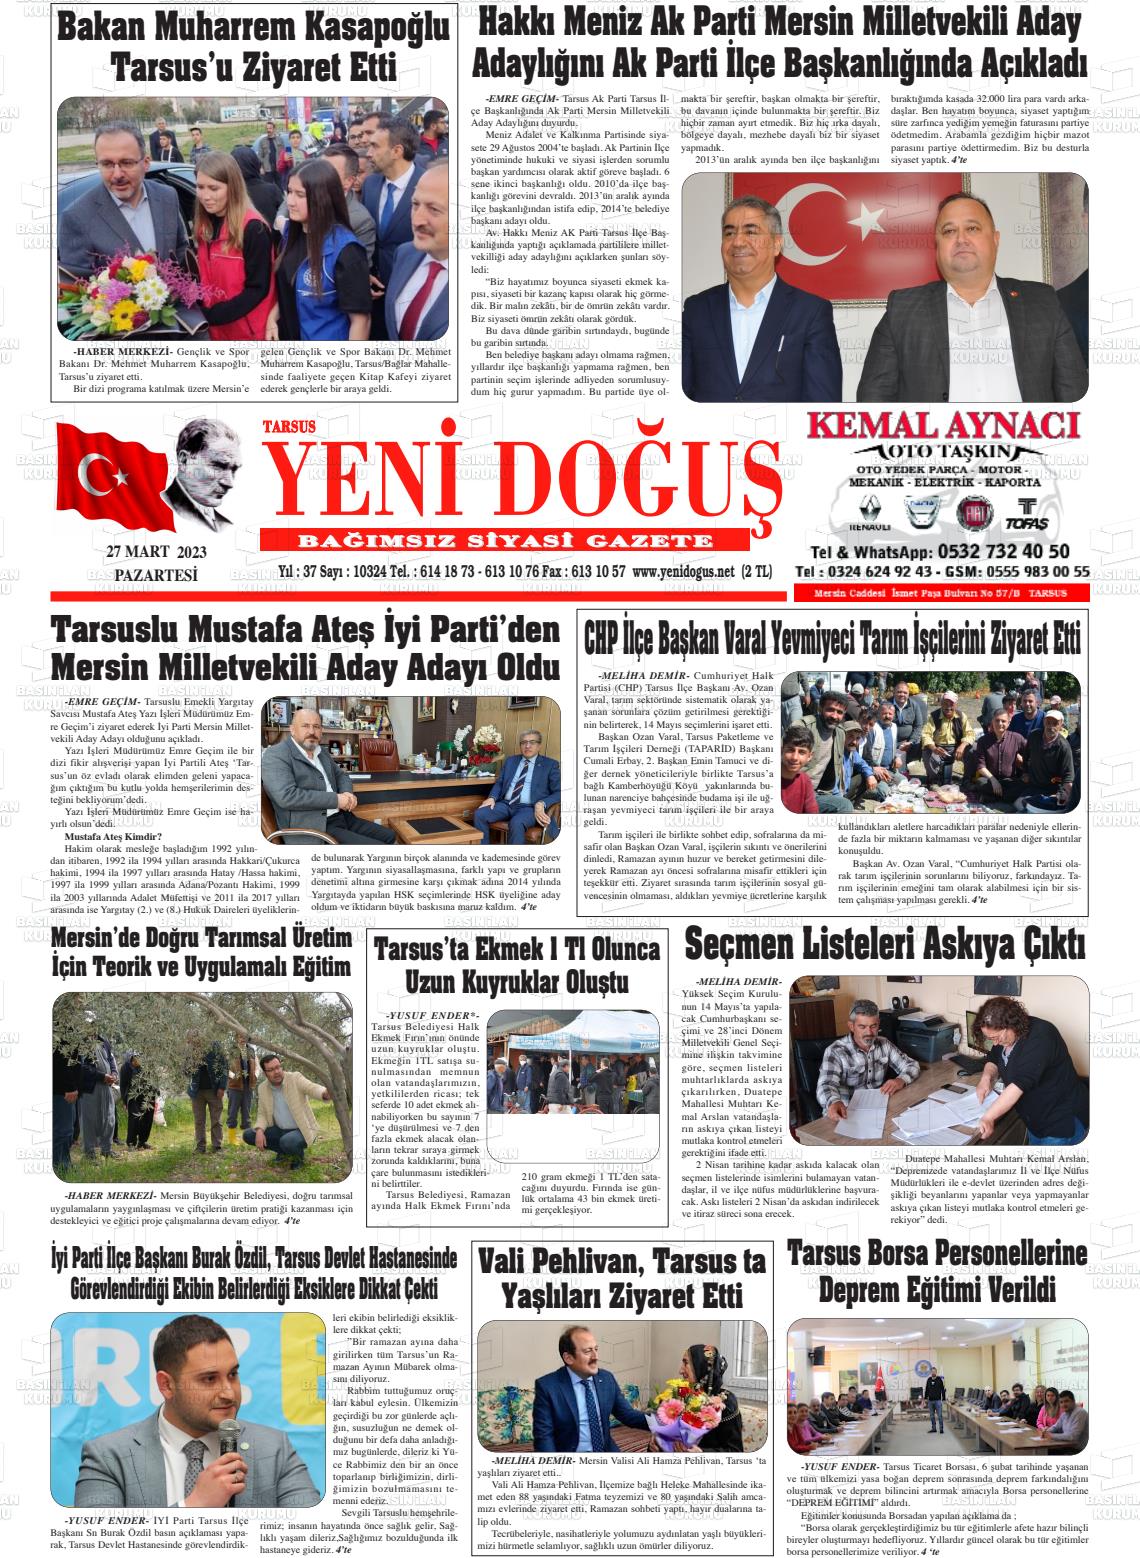 27 Mart 2023 Tarsus Yeni Doğuş Gazete Manşeti